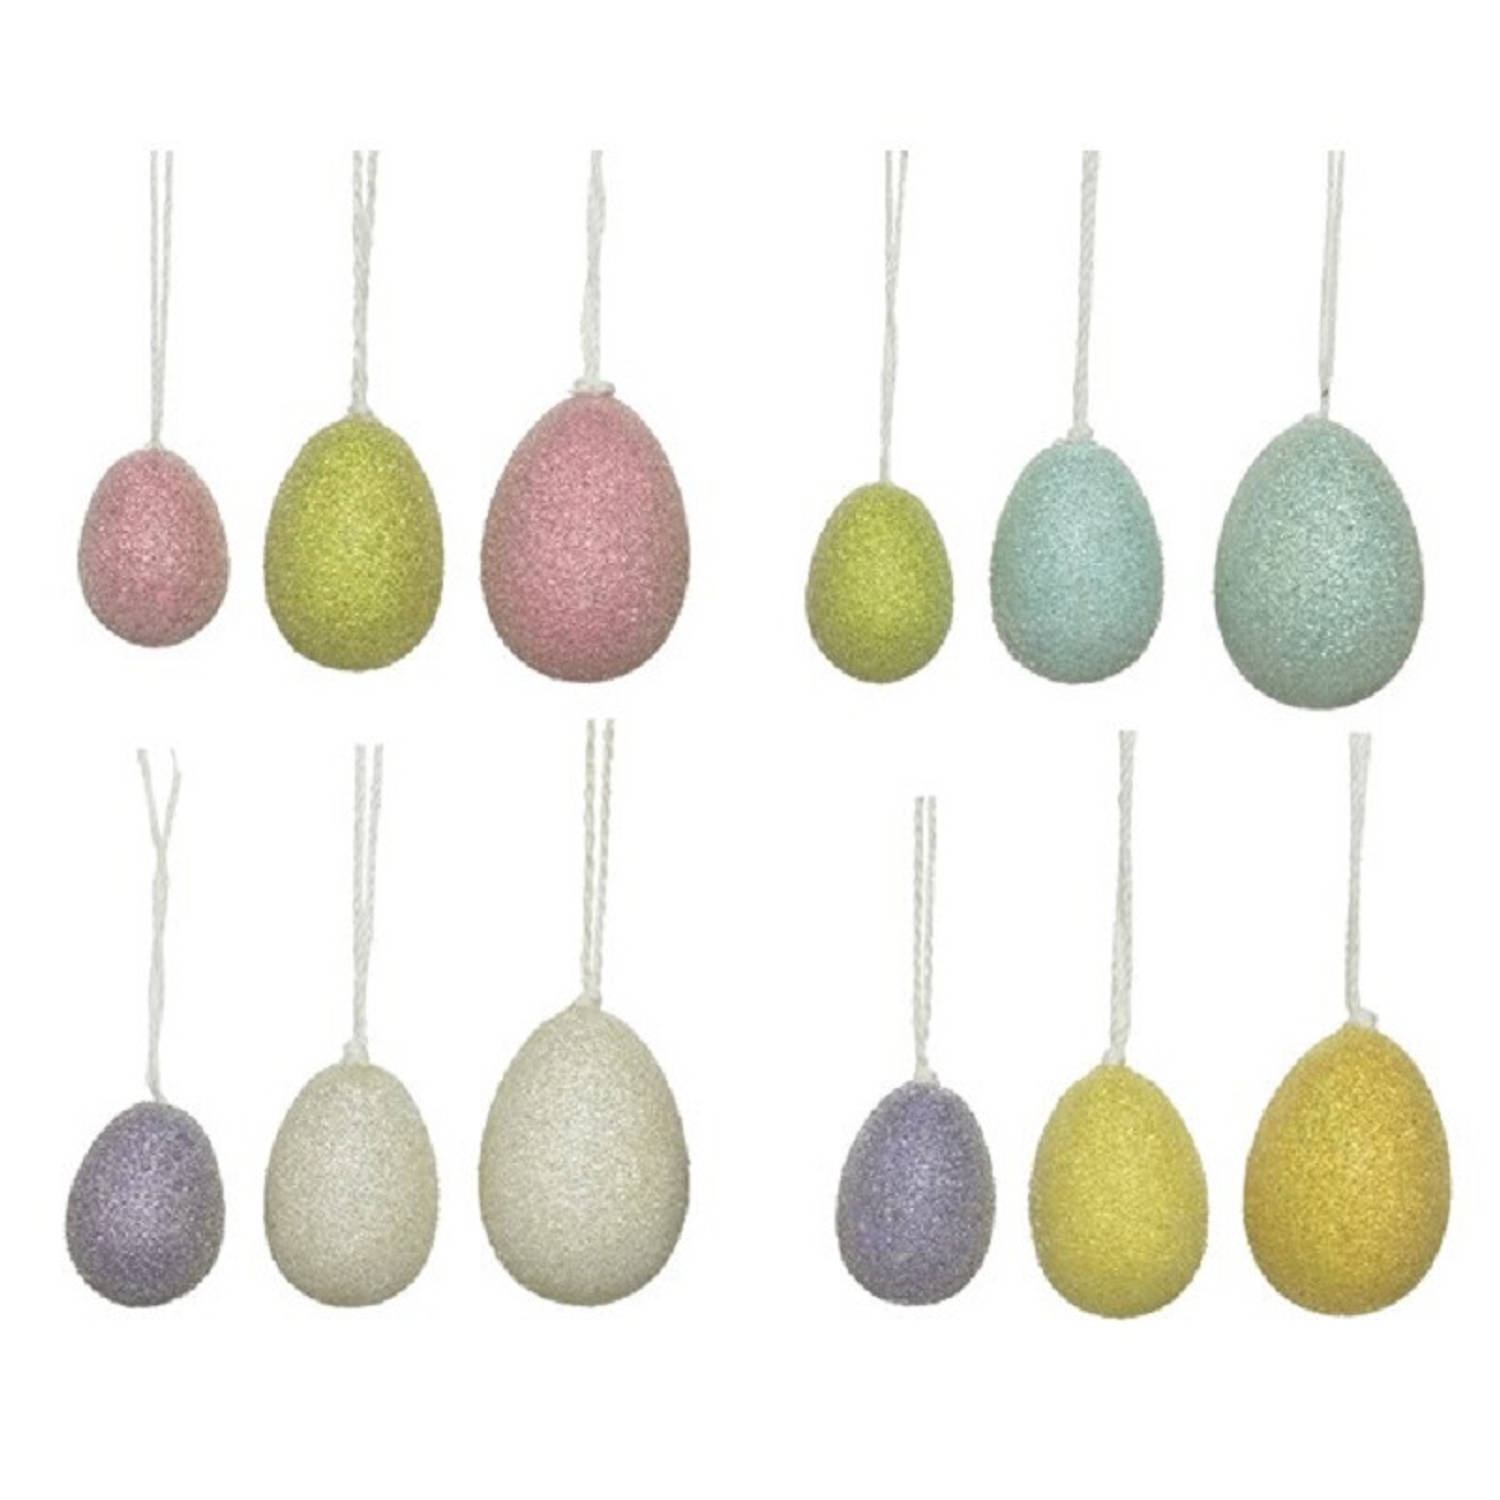 12x Gekleurde Glitter Plastic-kunststof Eieren-paaseieren 4-6 Cm Feestdecoratievoorwerp